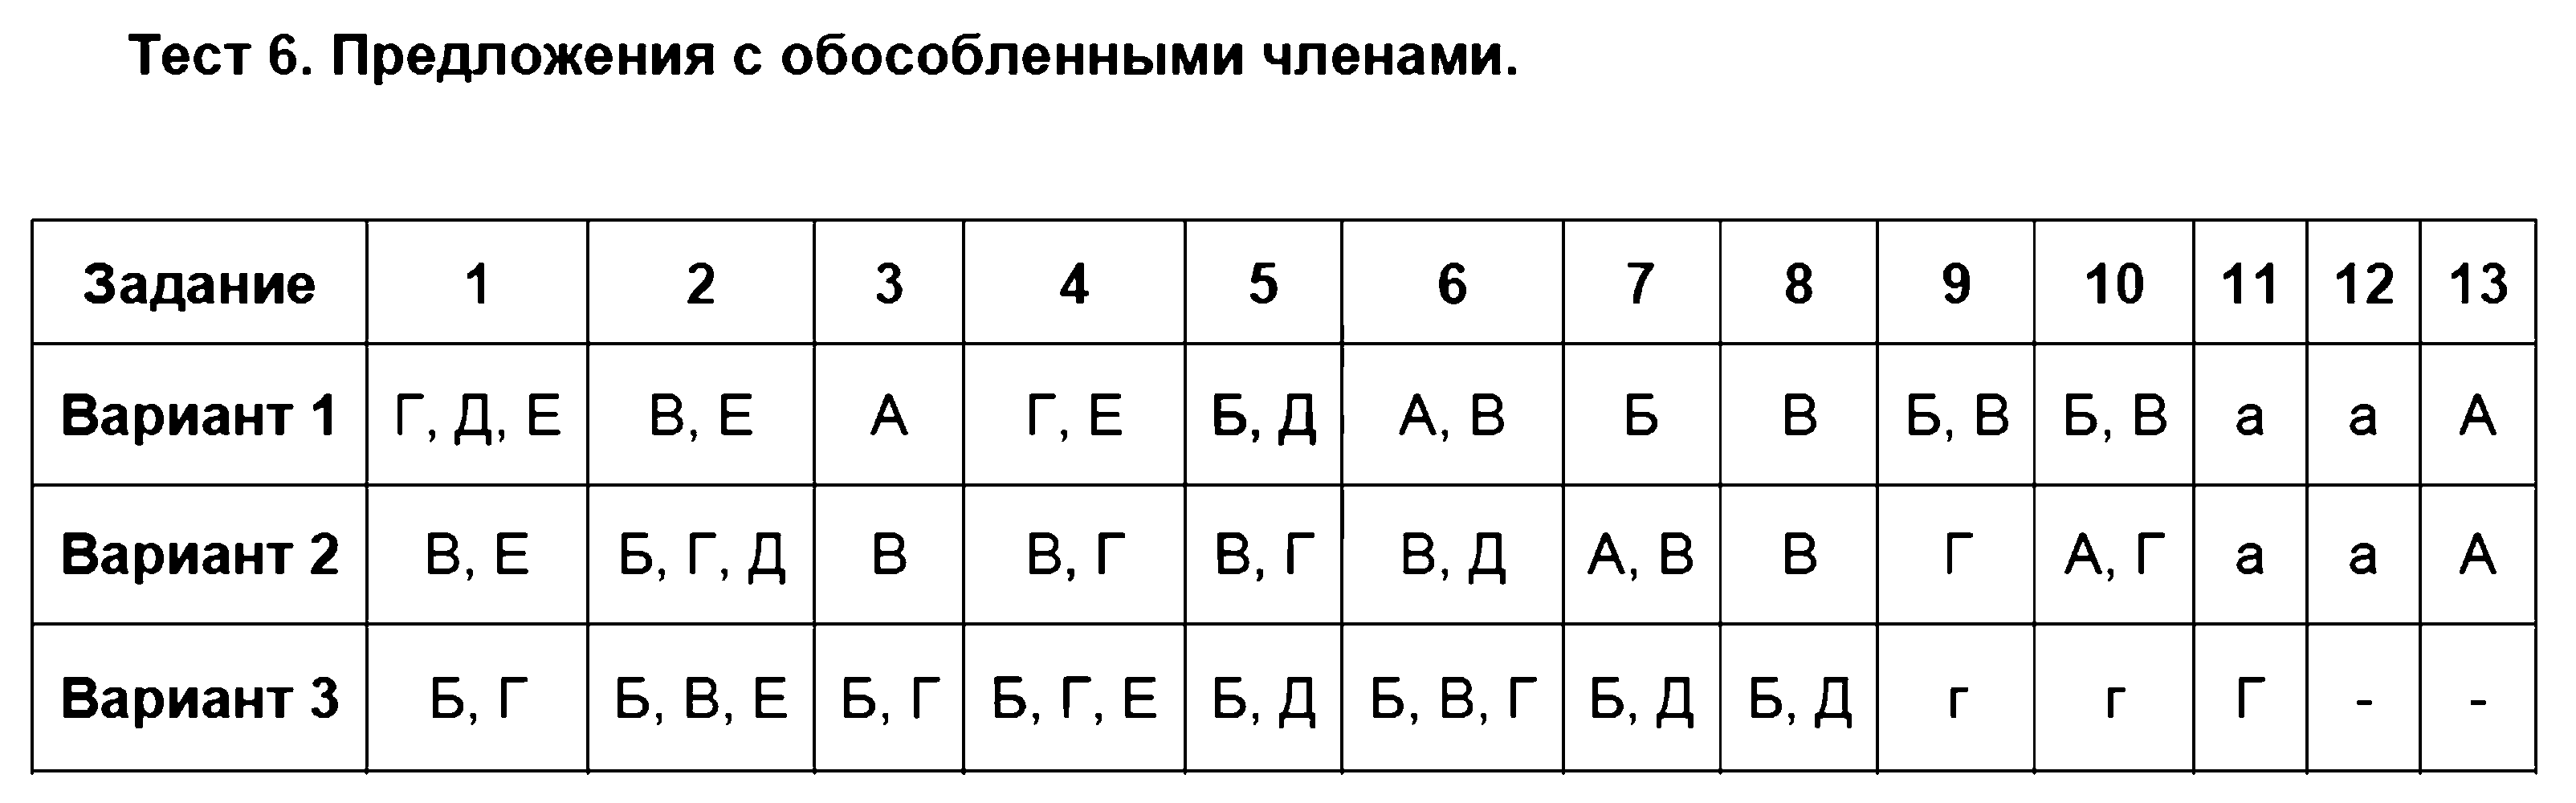 ГДЗ Русский язык 8 класс - Тест 6. Предложения с обособленными членами